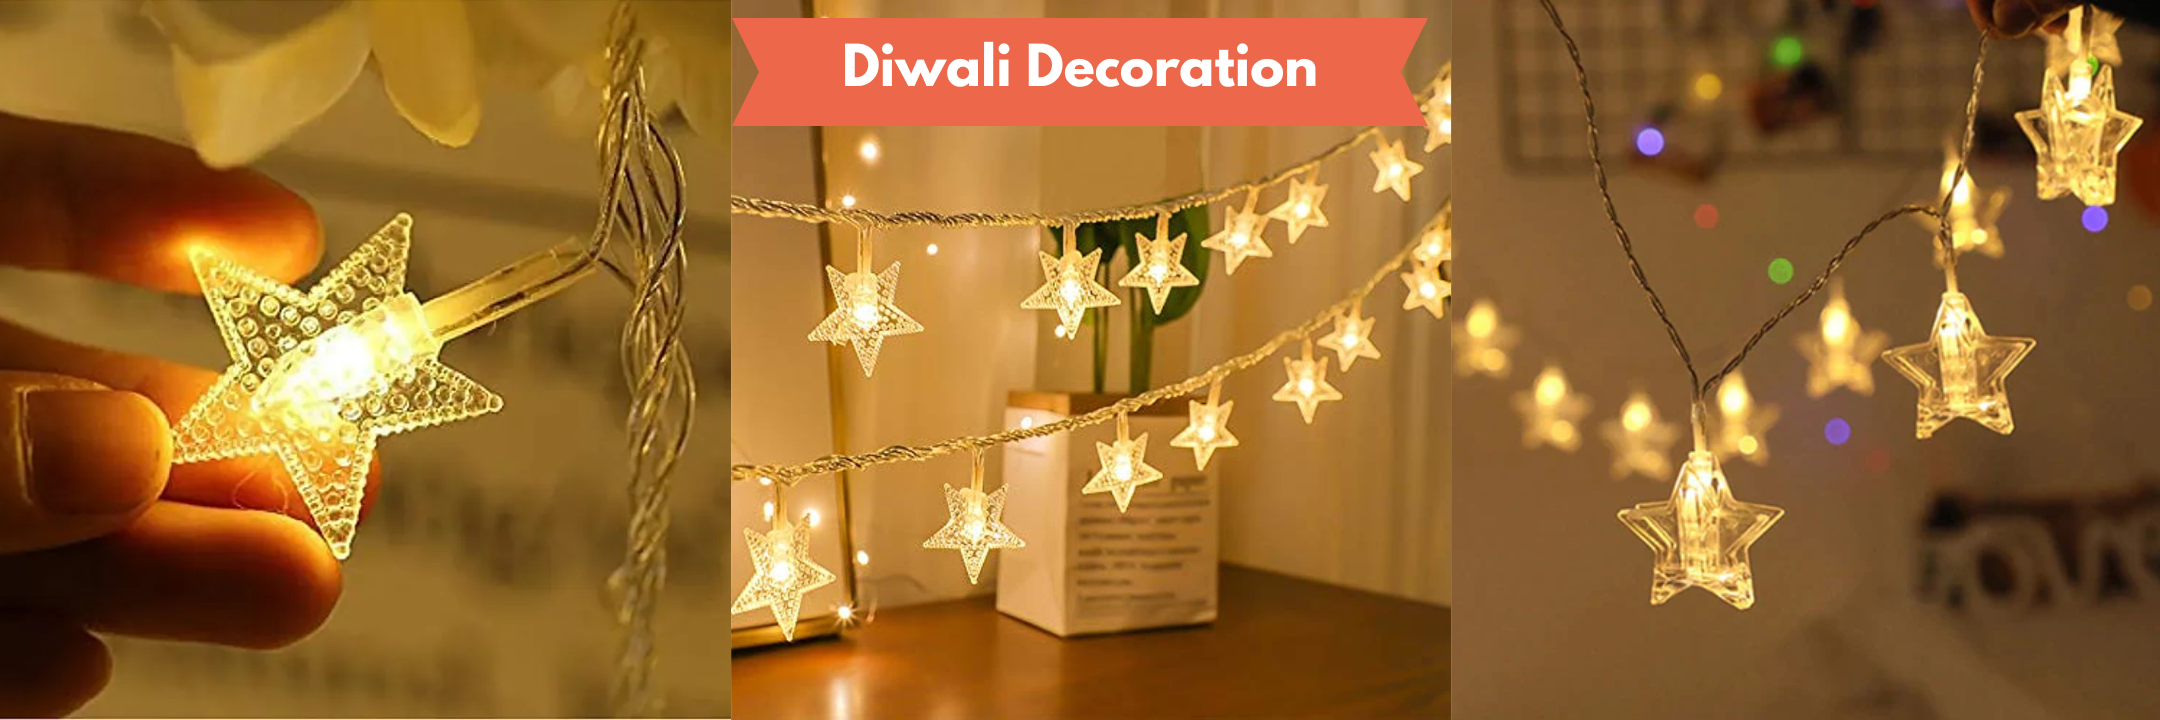 Star string Diwali LED lights for Diwali decoration